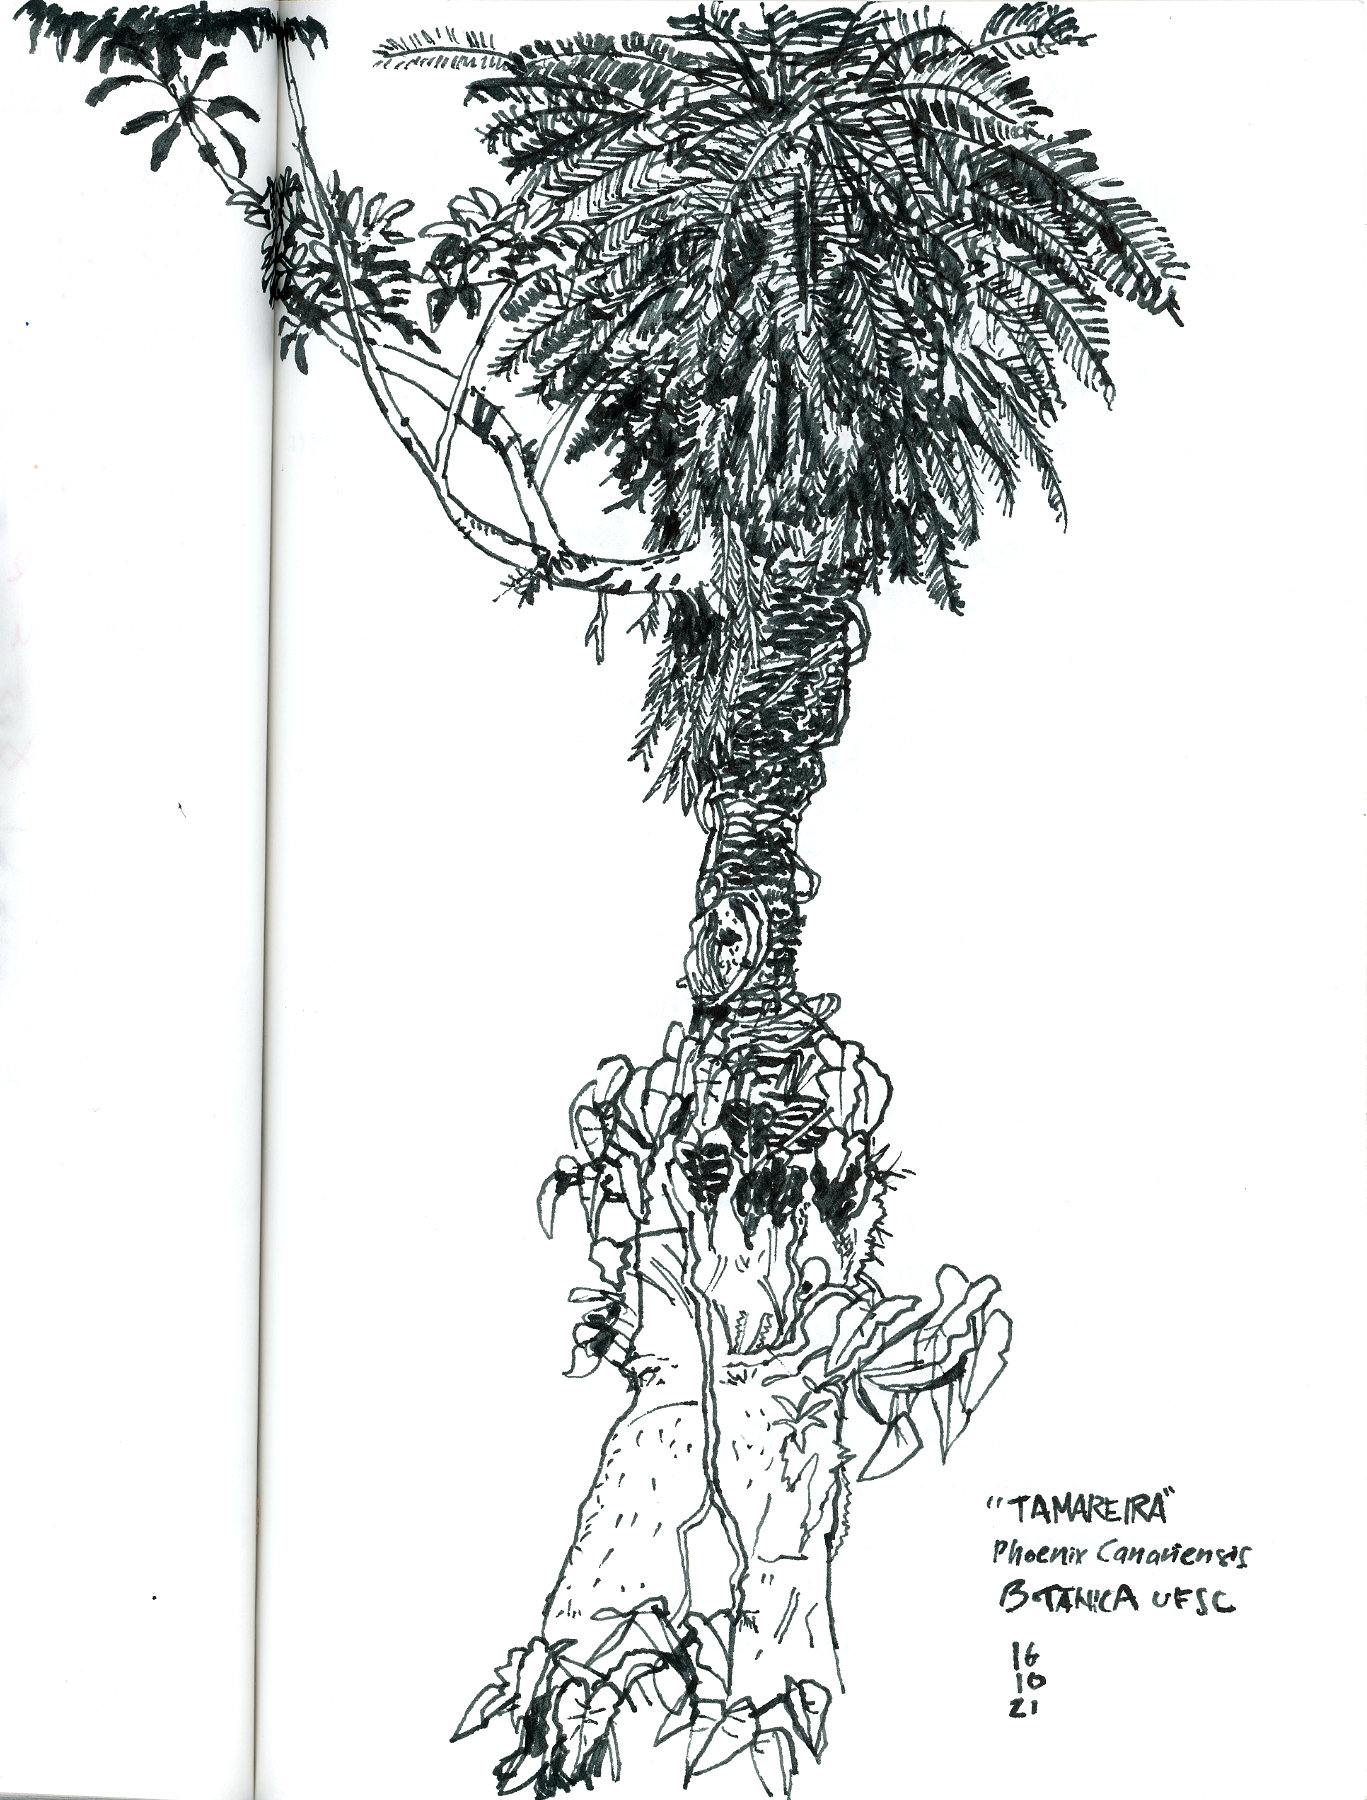 Desenho a traço, preto, de uma palmeira, com espécies parasitas na parte de baixo do caule e uma galho florescendo próximo ao topo da árvore, à esquerda